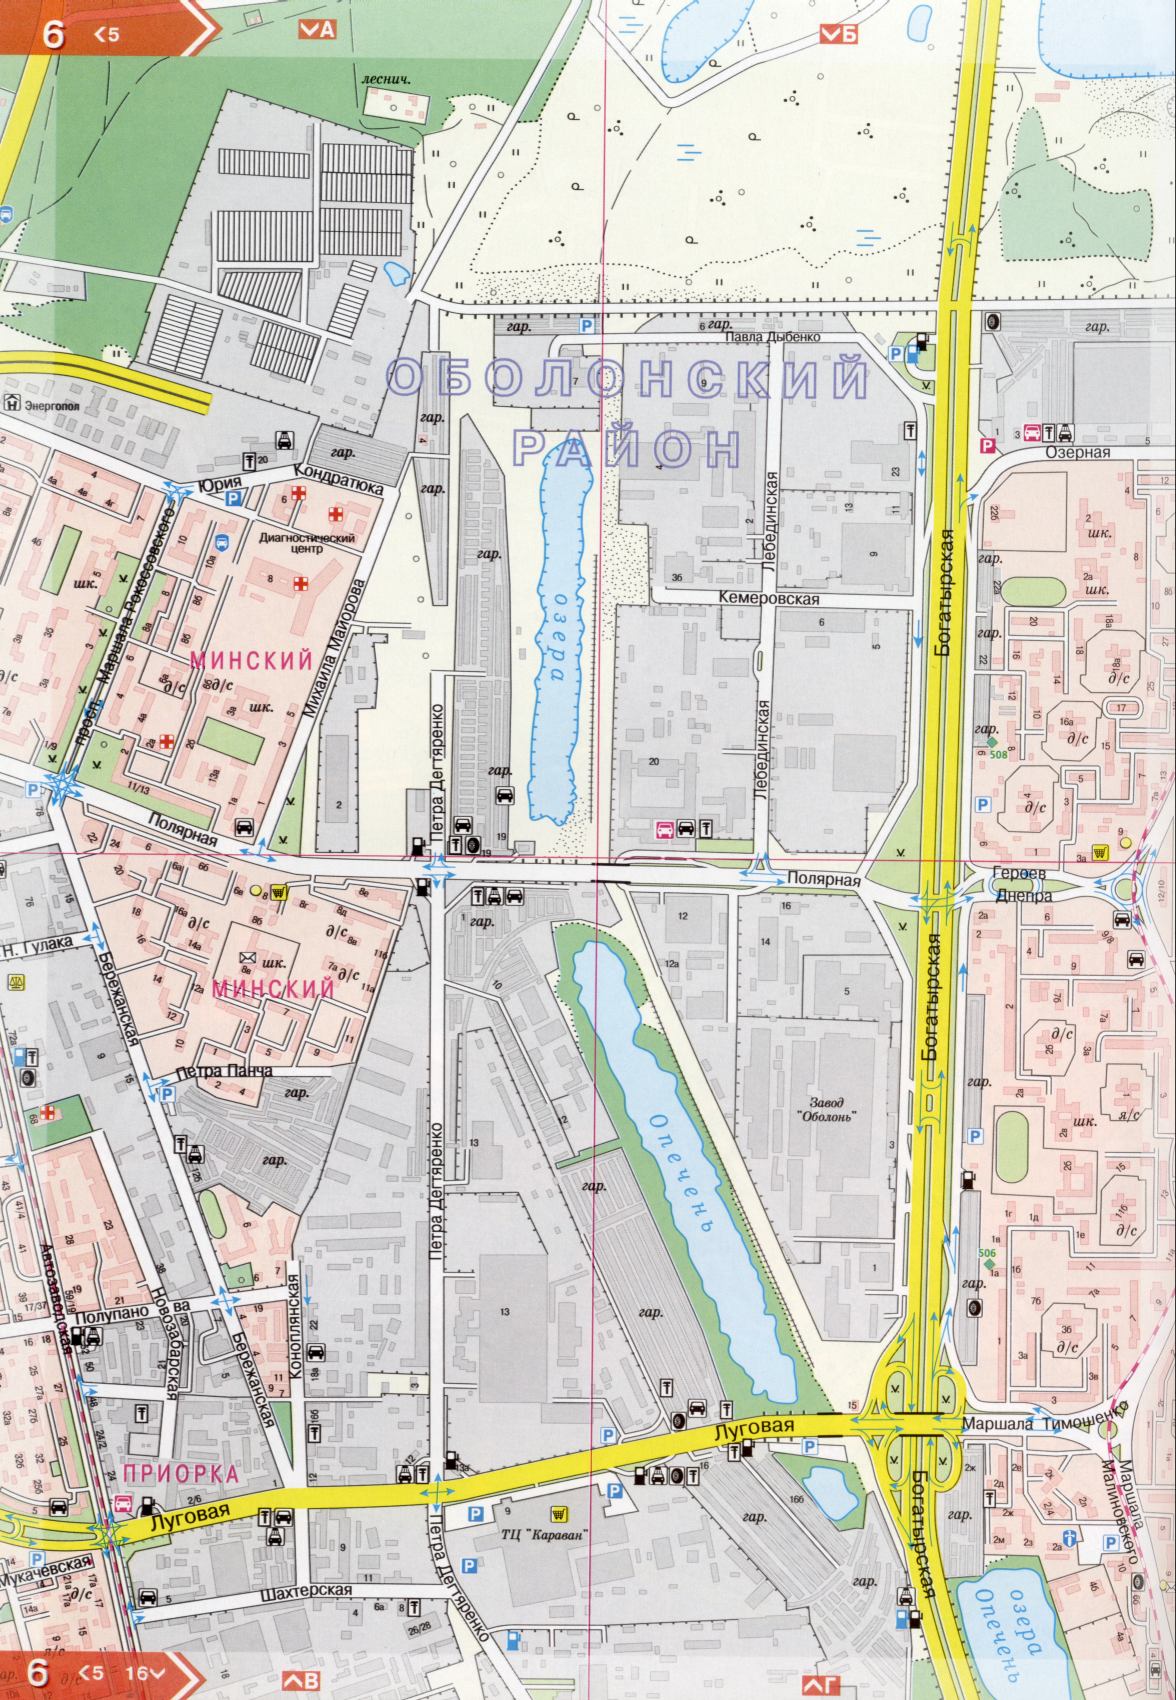 Kiew Karte Details 1cm = 150m für 45 Blatt. Karte von Kiew aus dem Atlas von Autobahnen. Laden Sie eine detaillierte Karte, D0 - Krieger Straße Kiew